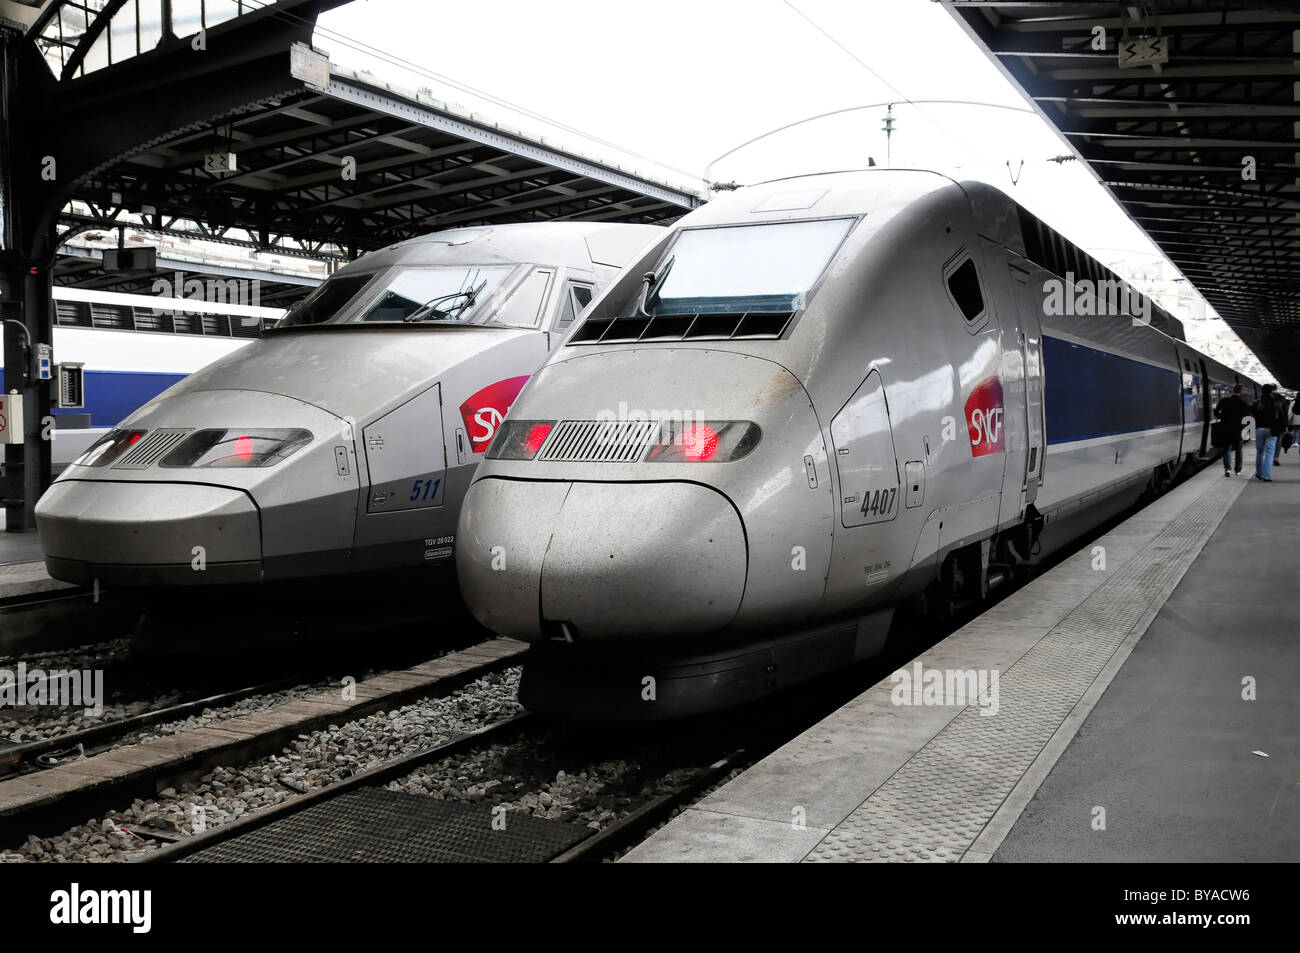 TGV, Francia el servicio ferroviario de alta velocidad, la estación de ferrocarril Gare du Nord, Paris, Francia, Europa Foto de stock